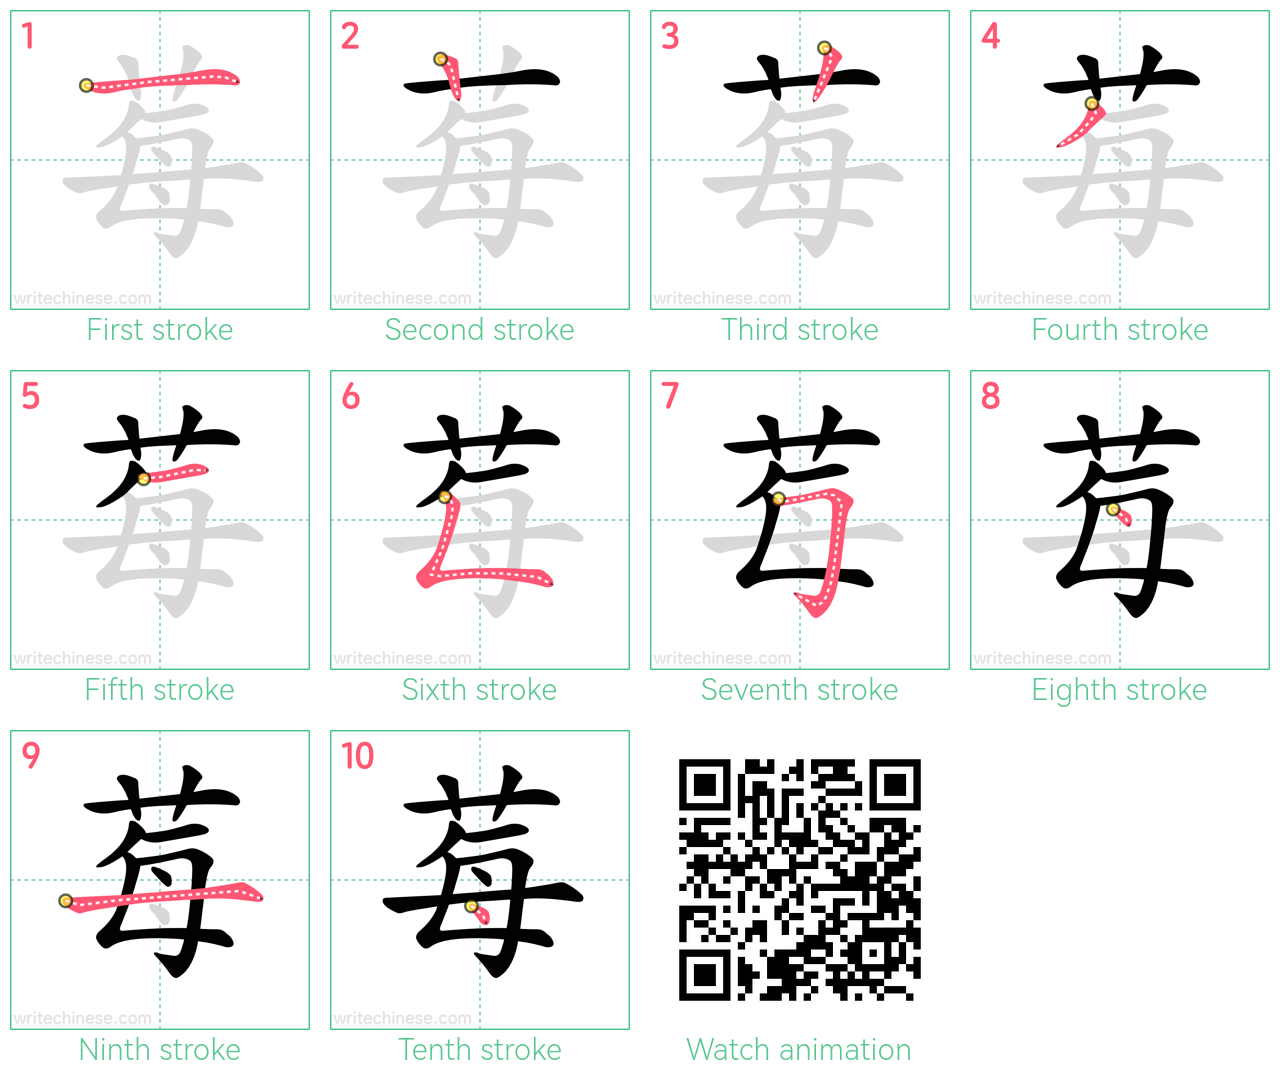 莓 step-by-step stroke order diagrams